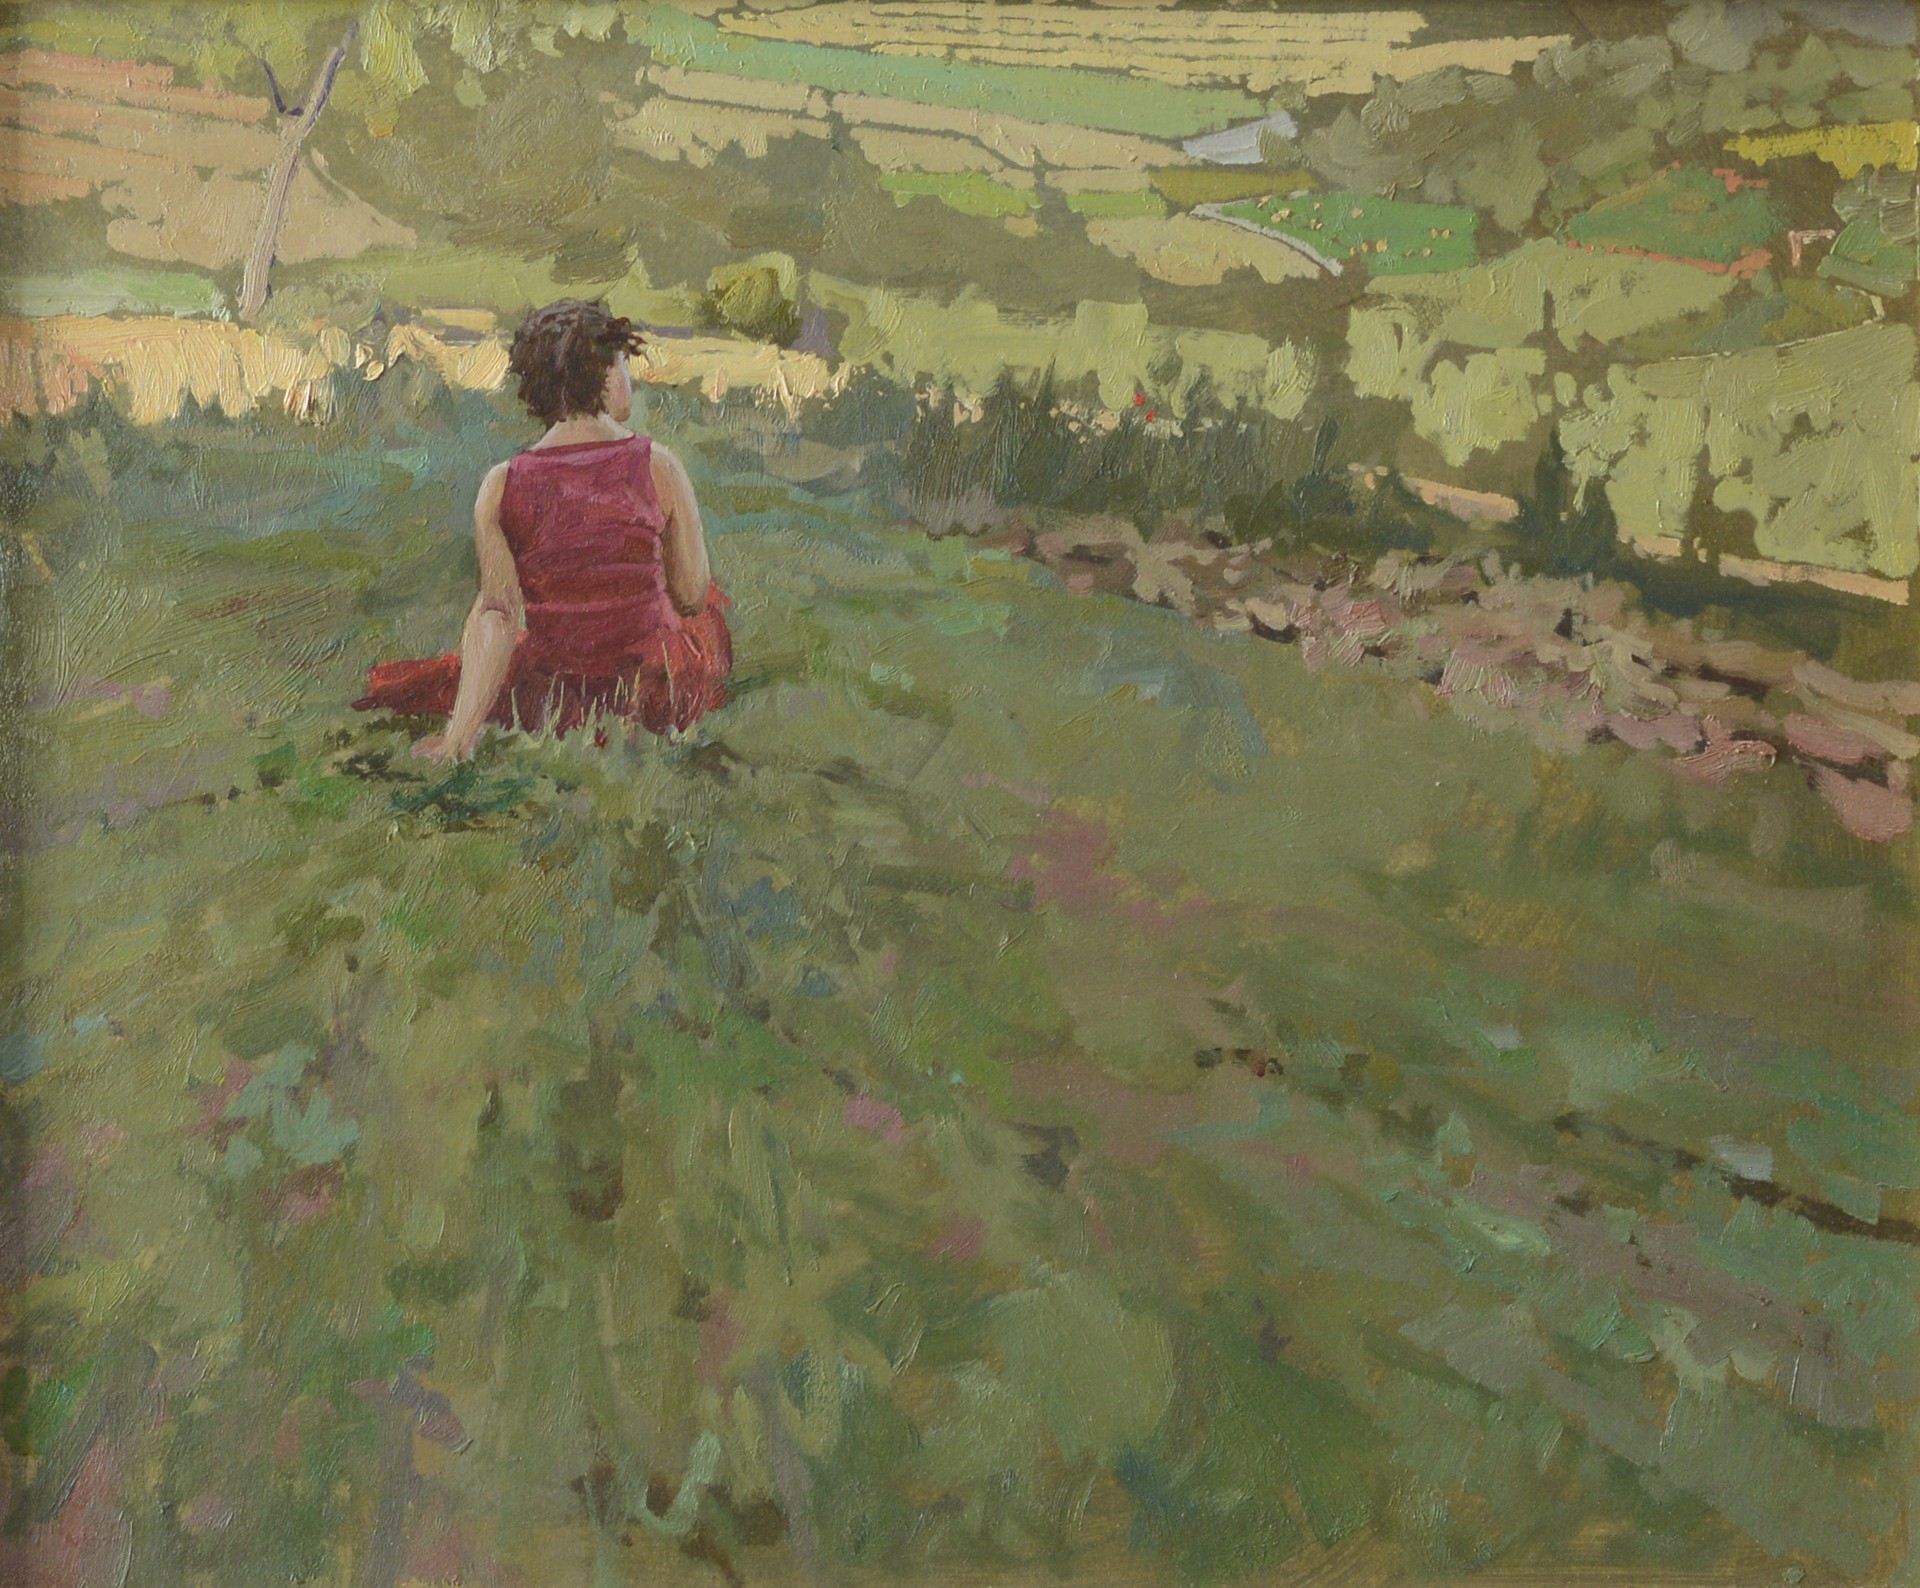 Kate in Her Fields by Daud Akhriev